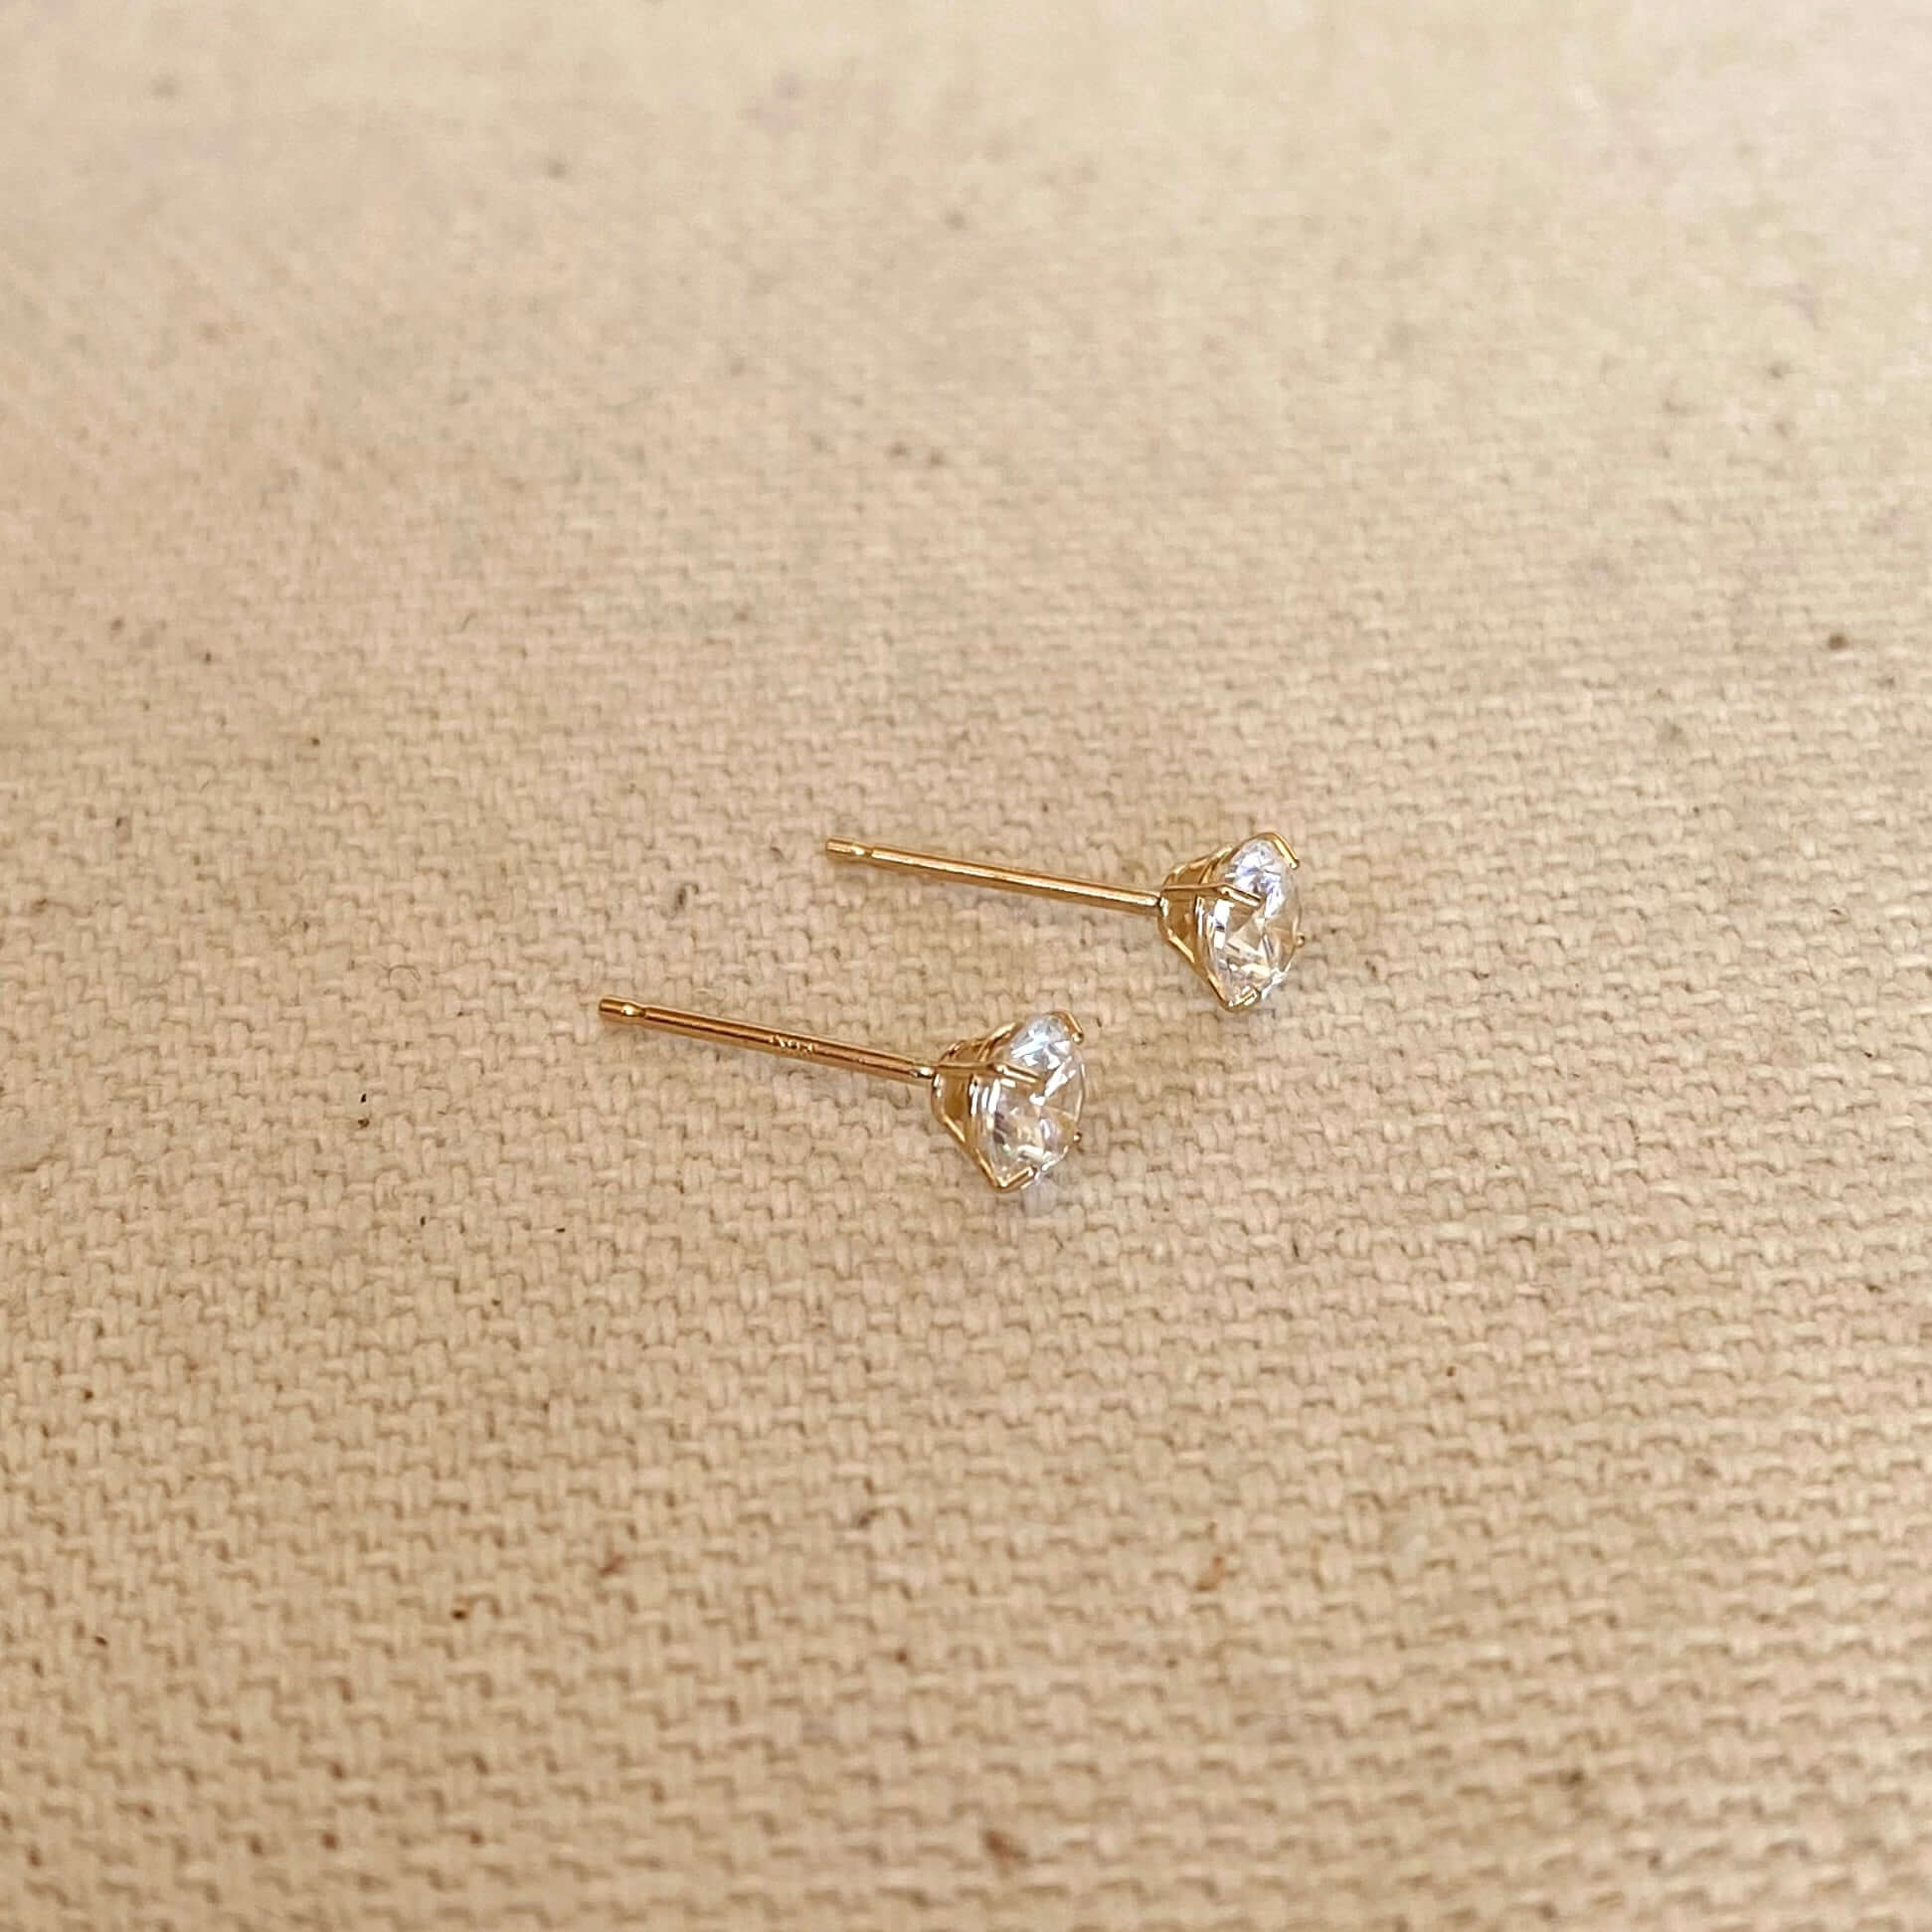 Amethyst Stud Earrings 4mm in Sterling Silver – Kathy Bankston